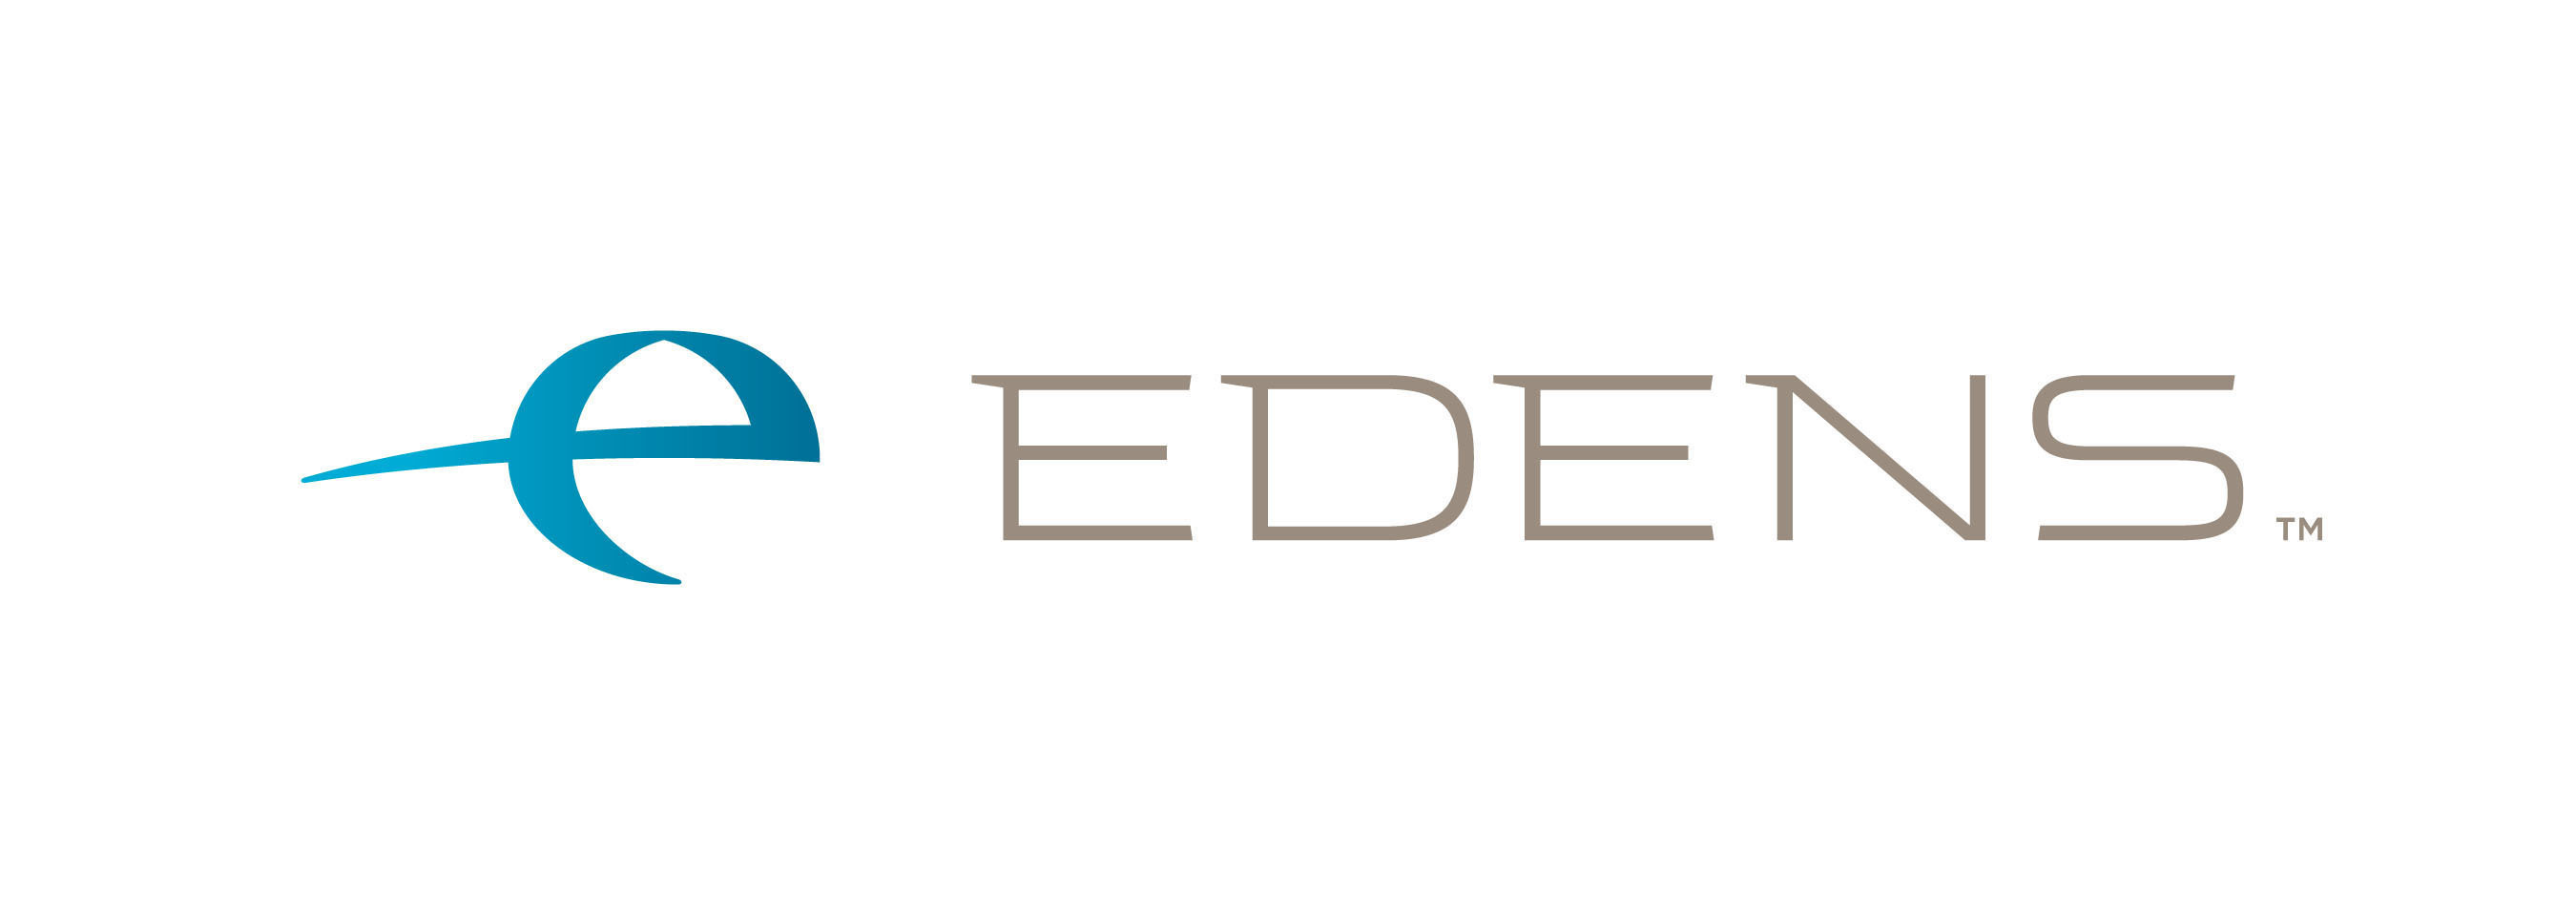 EDENS Logo.